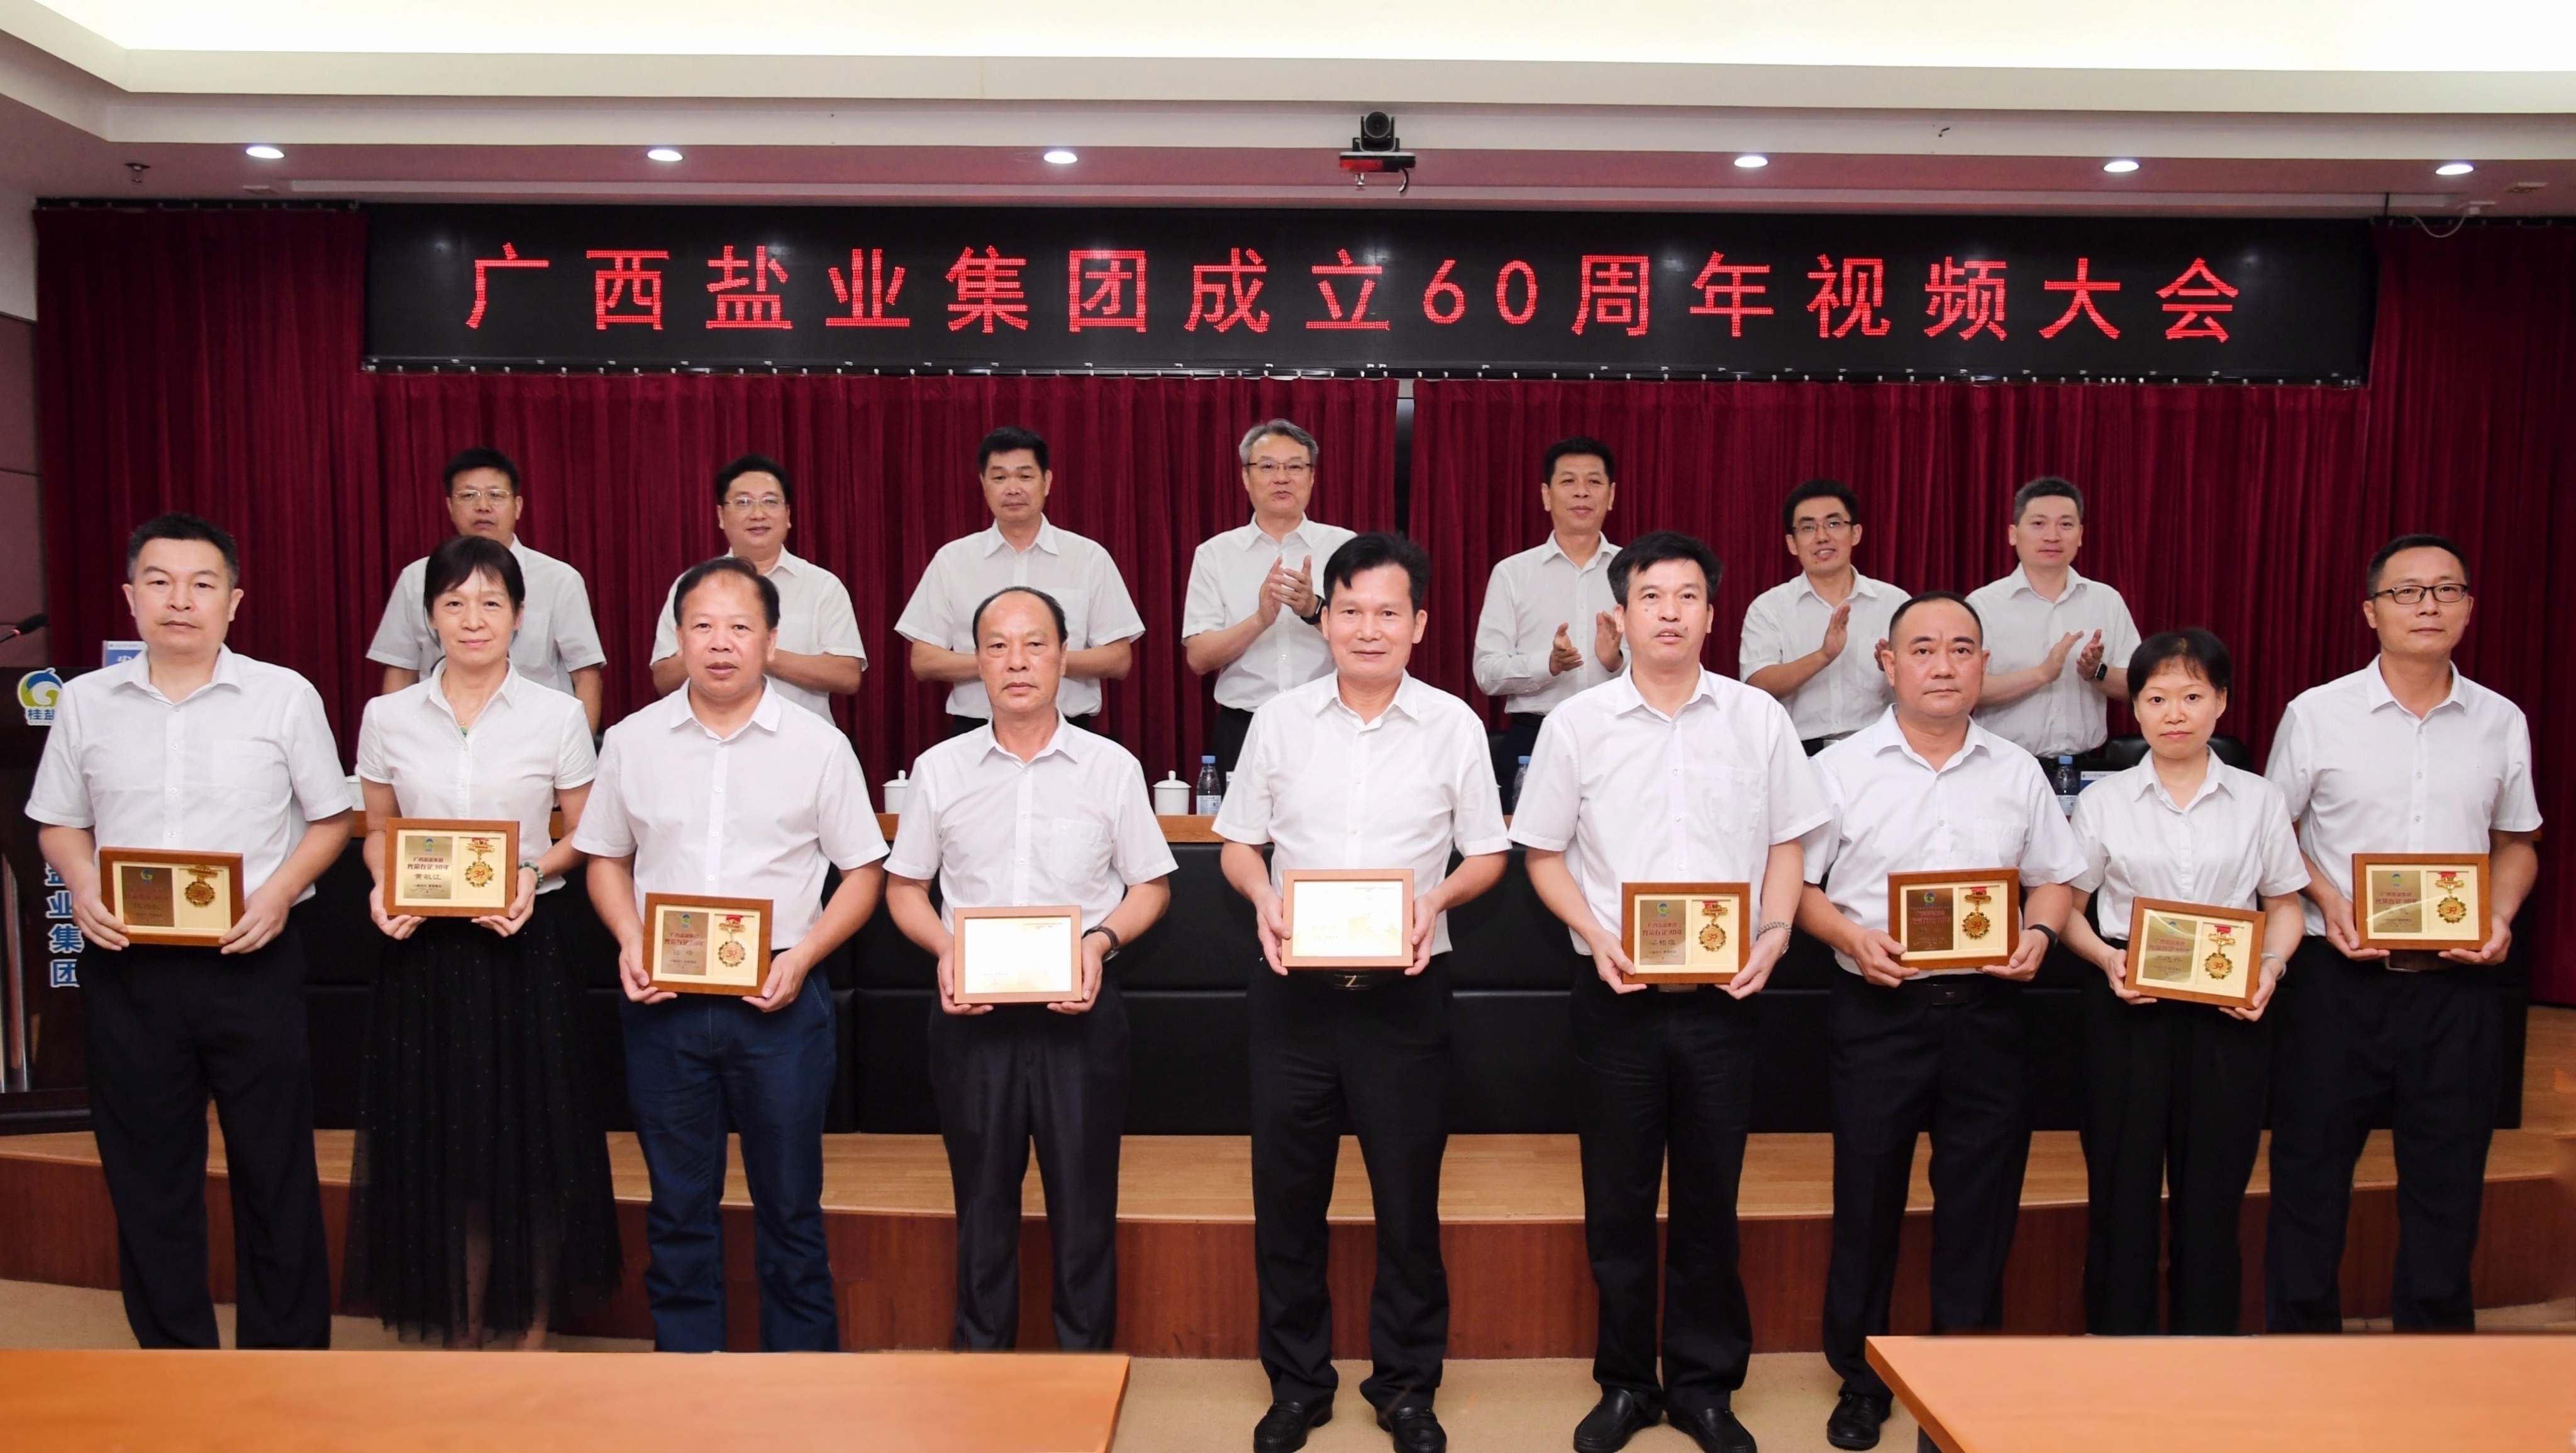 广西盐业集团举办成立60周年庆祝大会